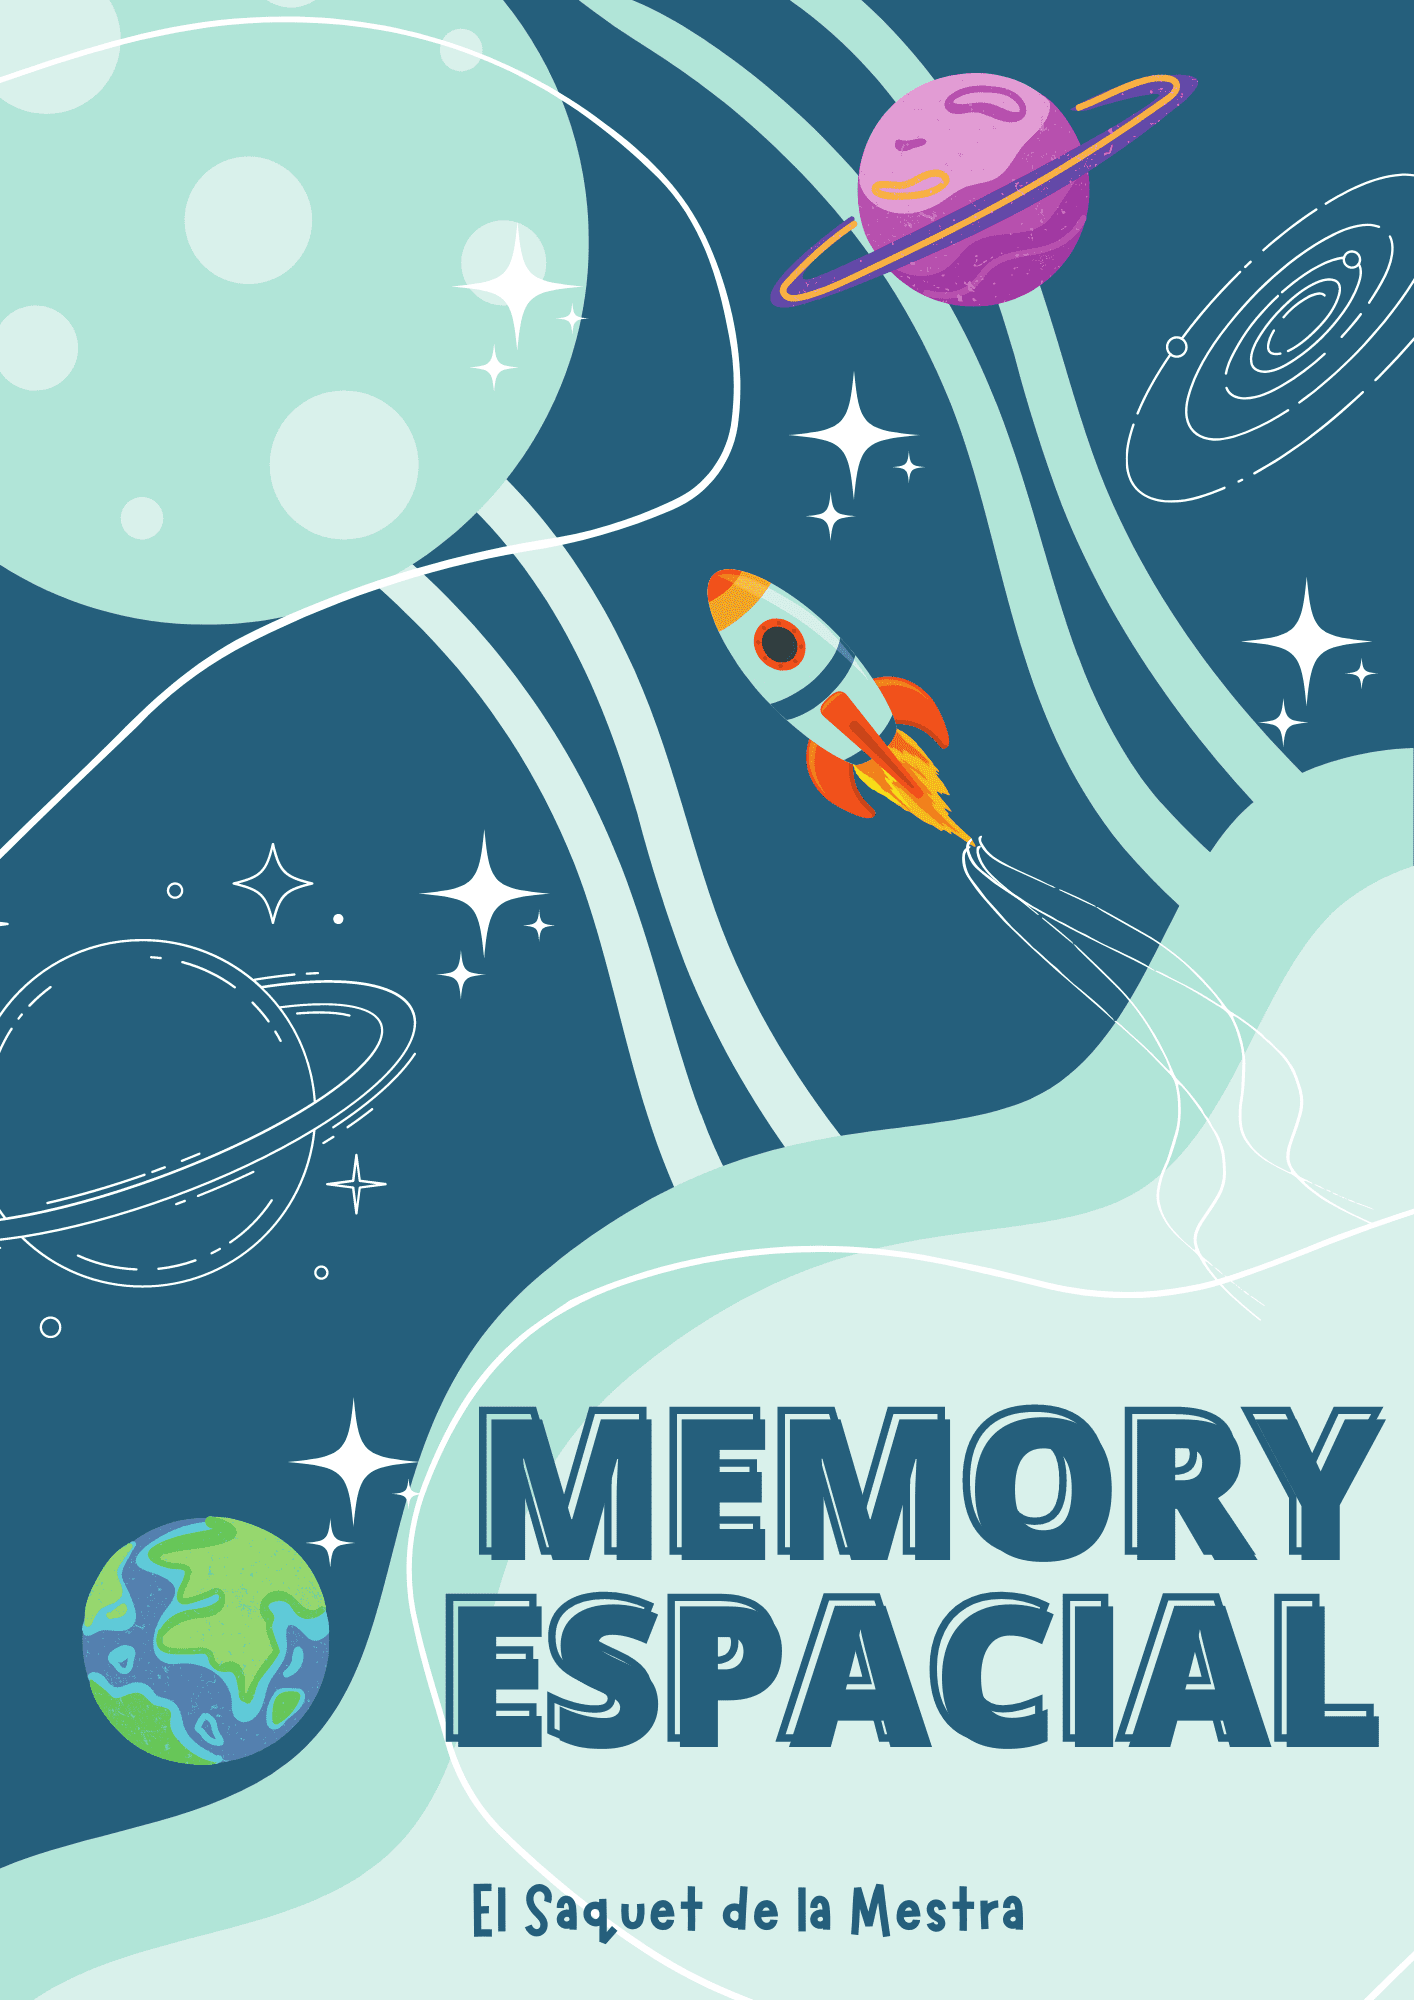 Memory Espacial